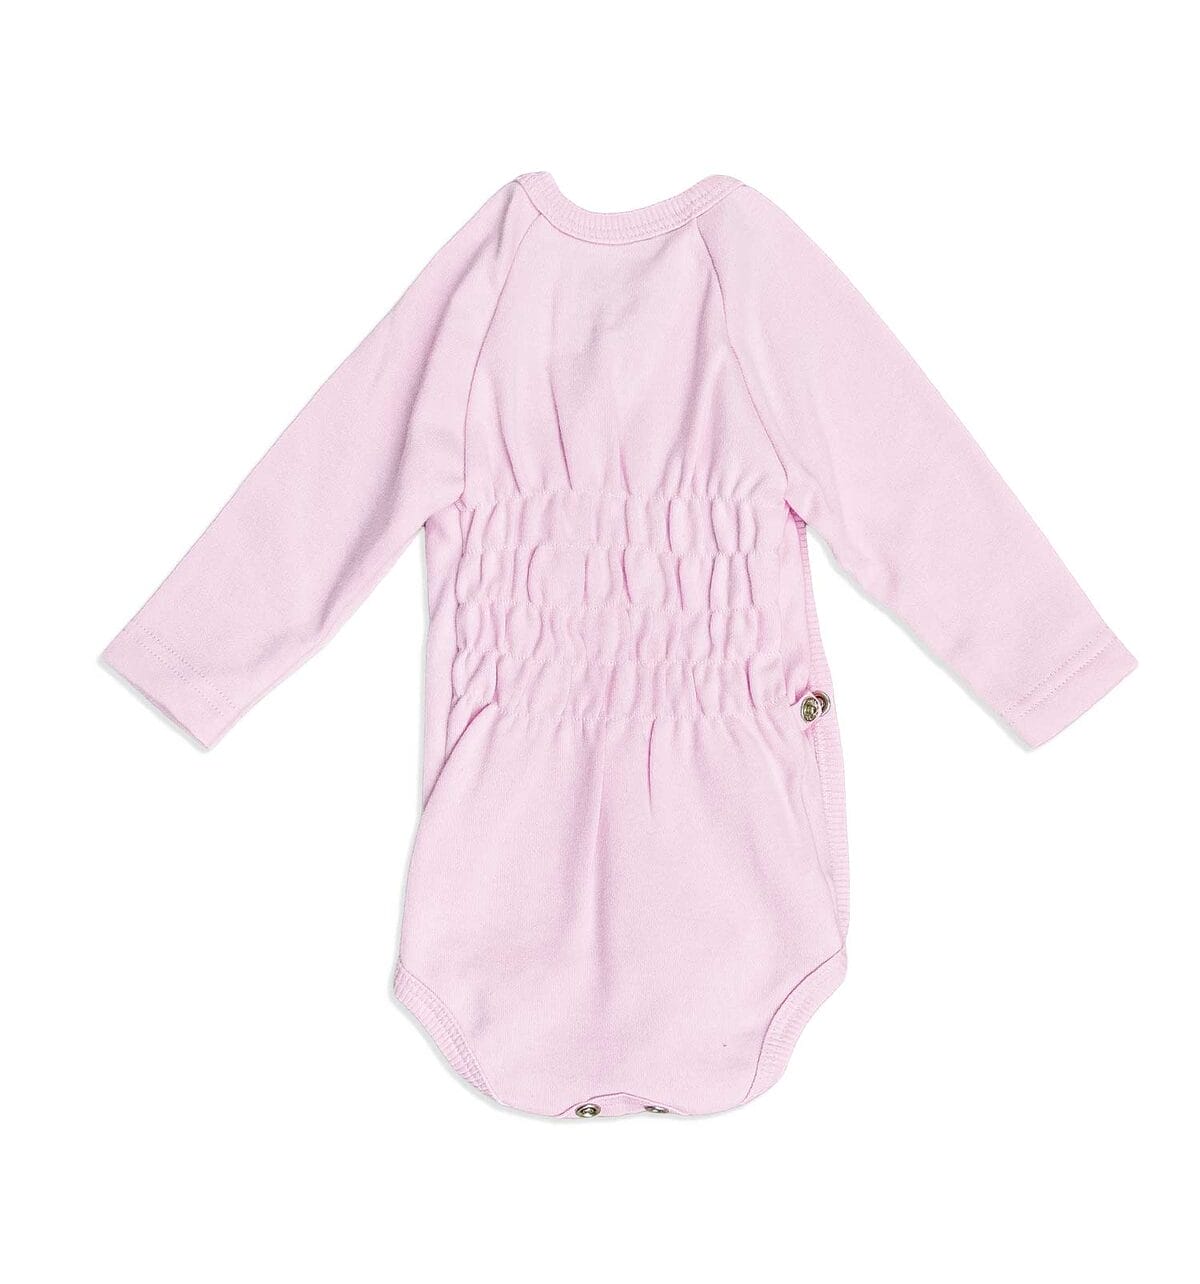 Eleganter rosa Baby-Wickelbody in Langarm-Design, mit einem flexiblen Gummieinsatz am Rücken, der sich der Form deines Babys anpasst, für zusätzlichen Komfort und Bewegungsfreiheit.